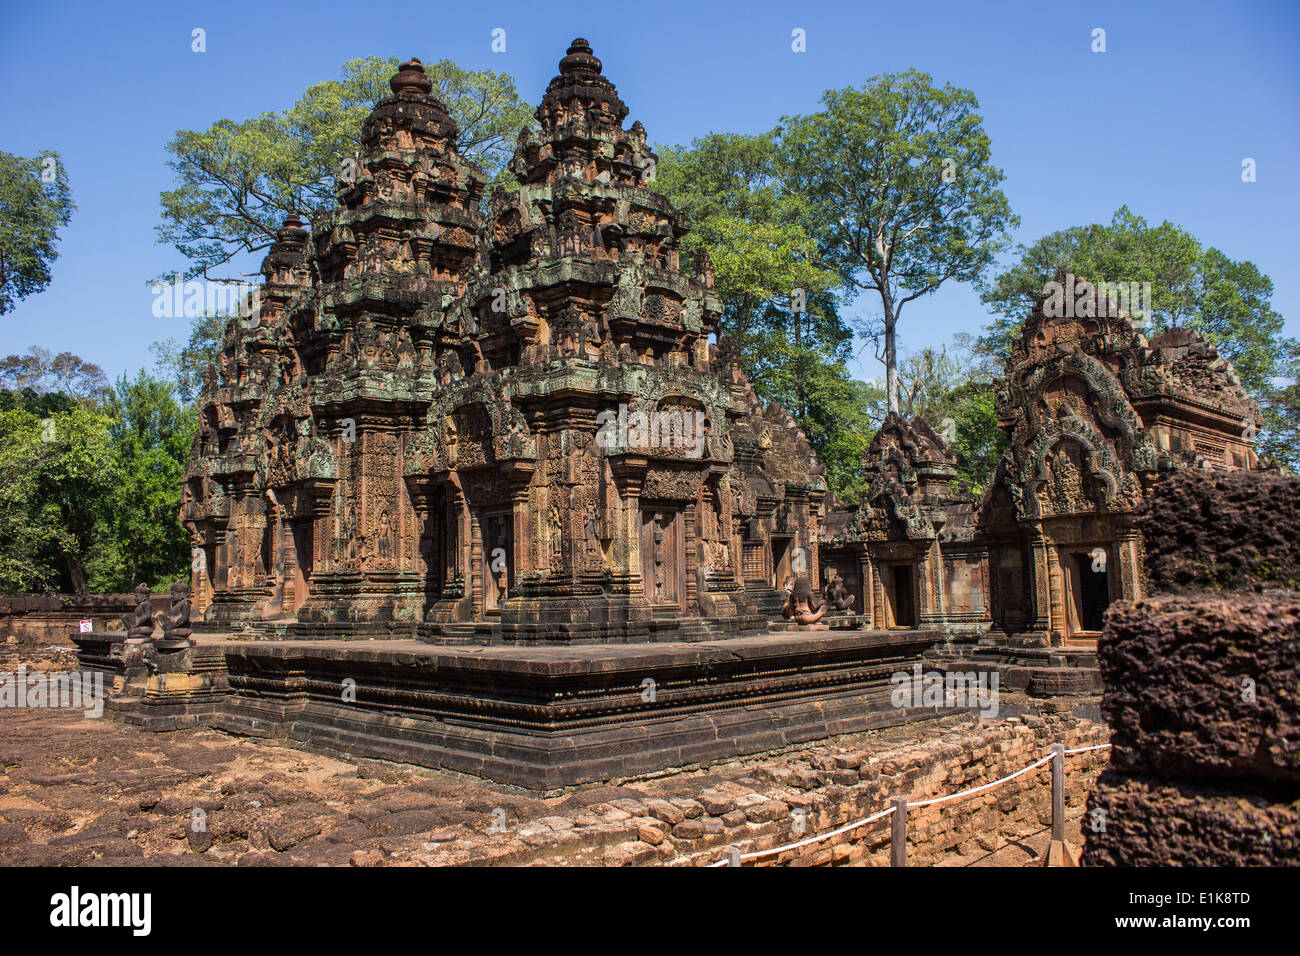 Banteay Srei ist einen schönen 10. Jahrhundert Hindu-Tempel in Kambodscha. Konstruiert aus rotem Sandstein, zeigt es aufwendige Schnitzereien. Stockfoto